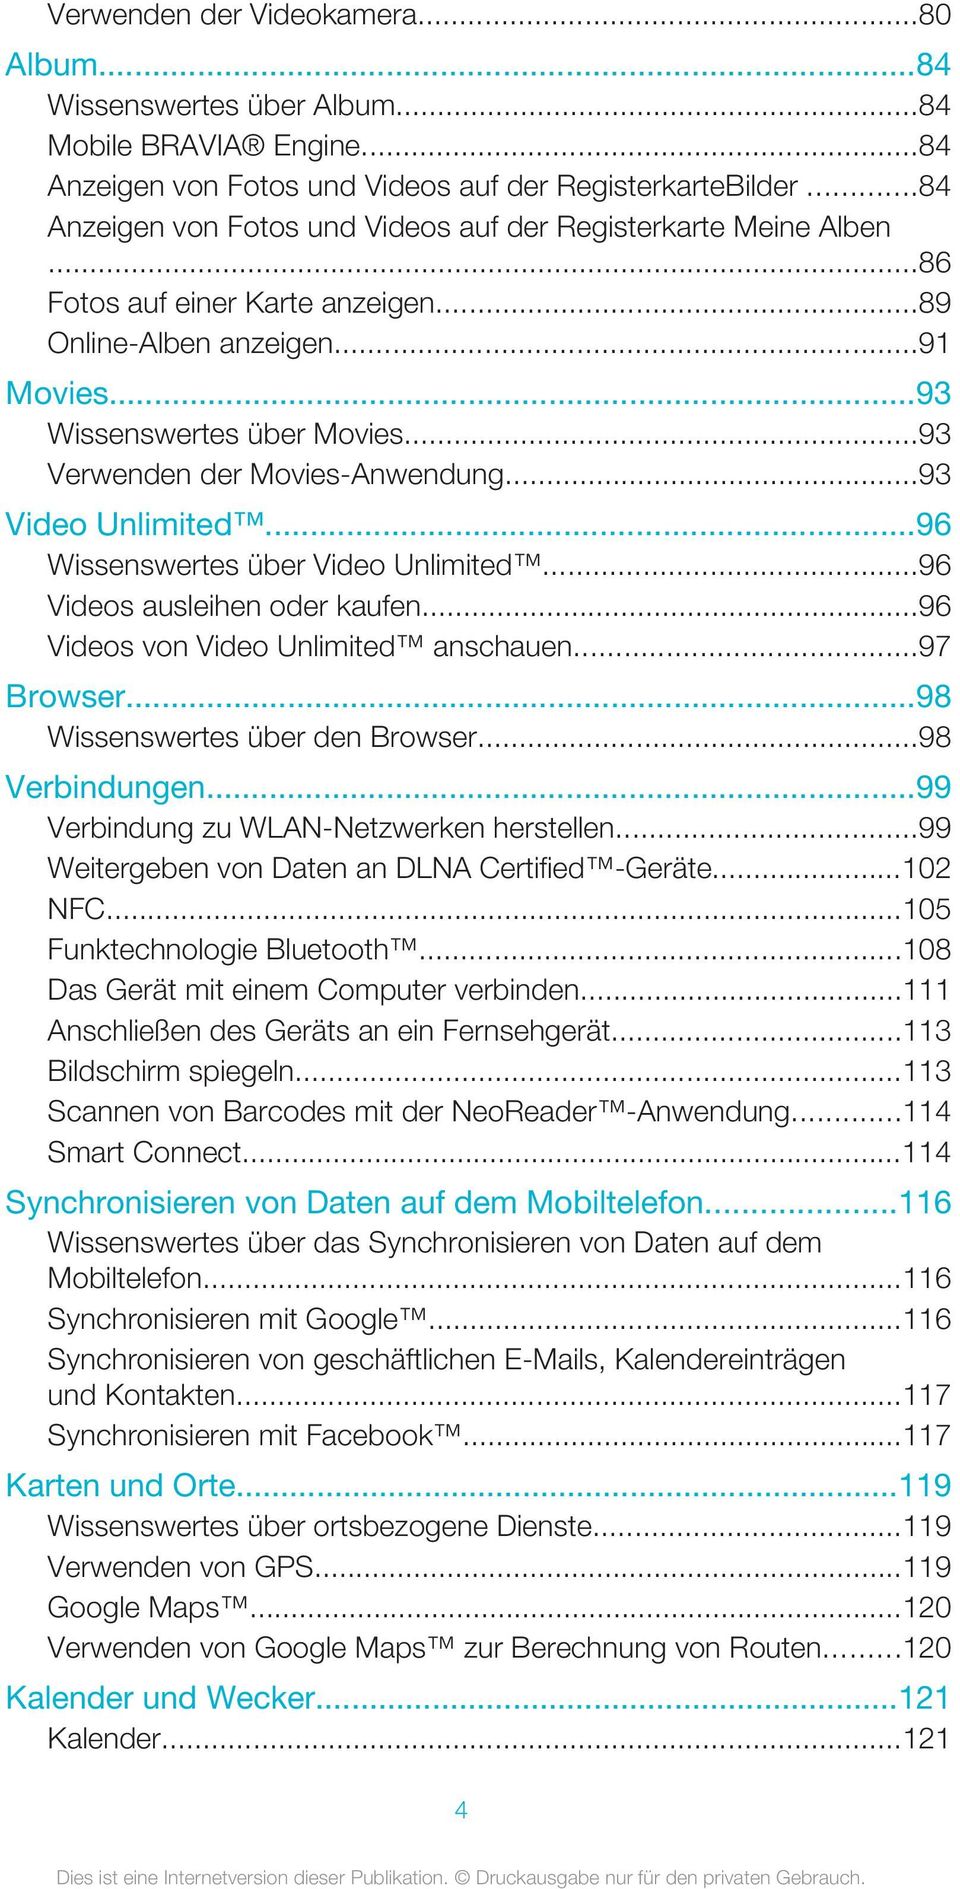 ..93 Verwenden der Movies-Anwendung...93 Video Unlimited...96 Wissenswertes über Video Unlimited...96 Videos ausleihen oder kaufen...96 Videos von Video Unlimited anschauen...97 Browser.